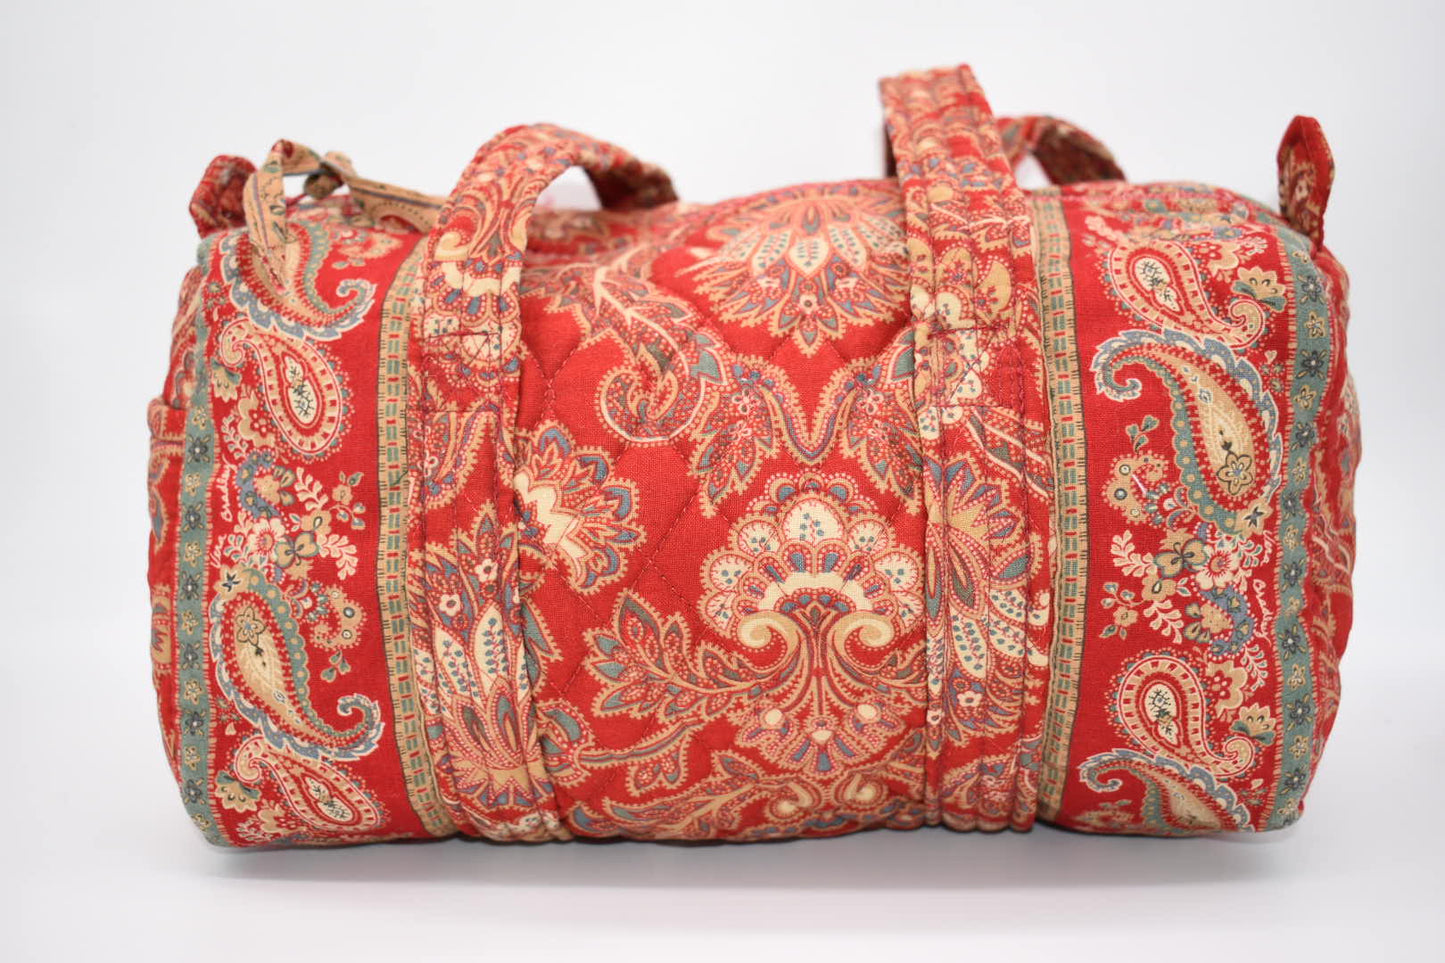 Vintage Vera Bradley Handbag / Shoulder Bag in "Windsor-1995" Pattern